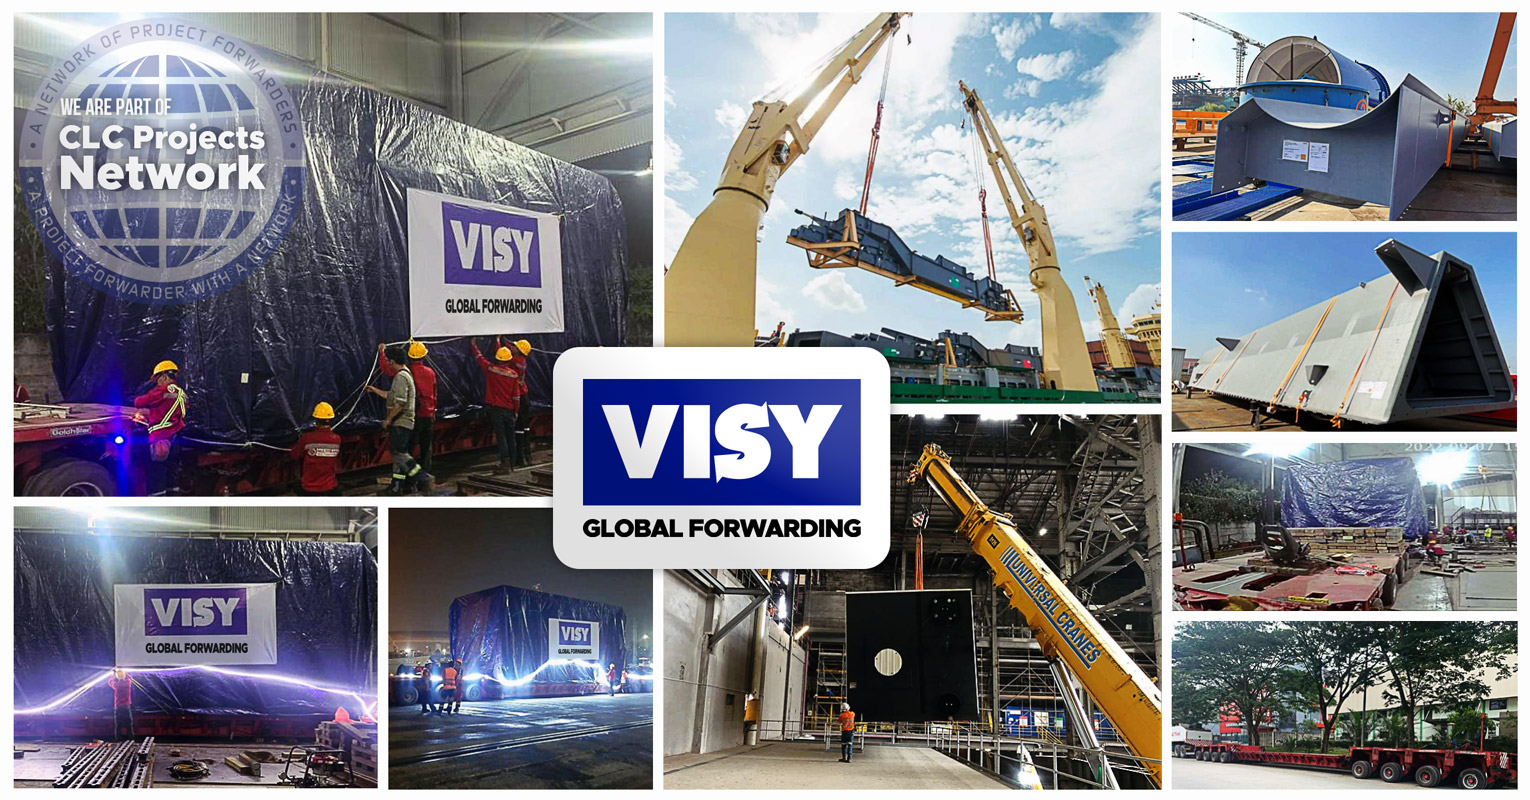 New Shipper BCO – Visy Global Forwarding